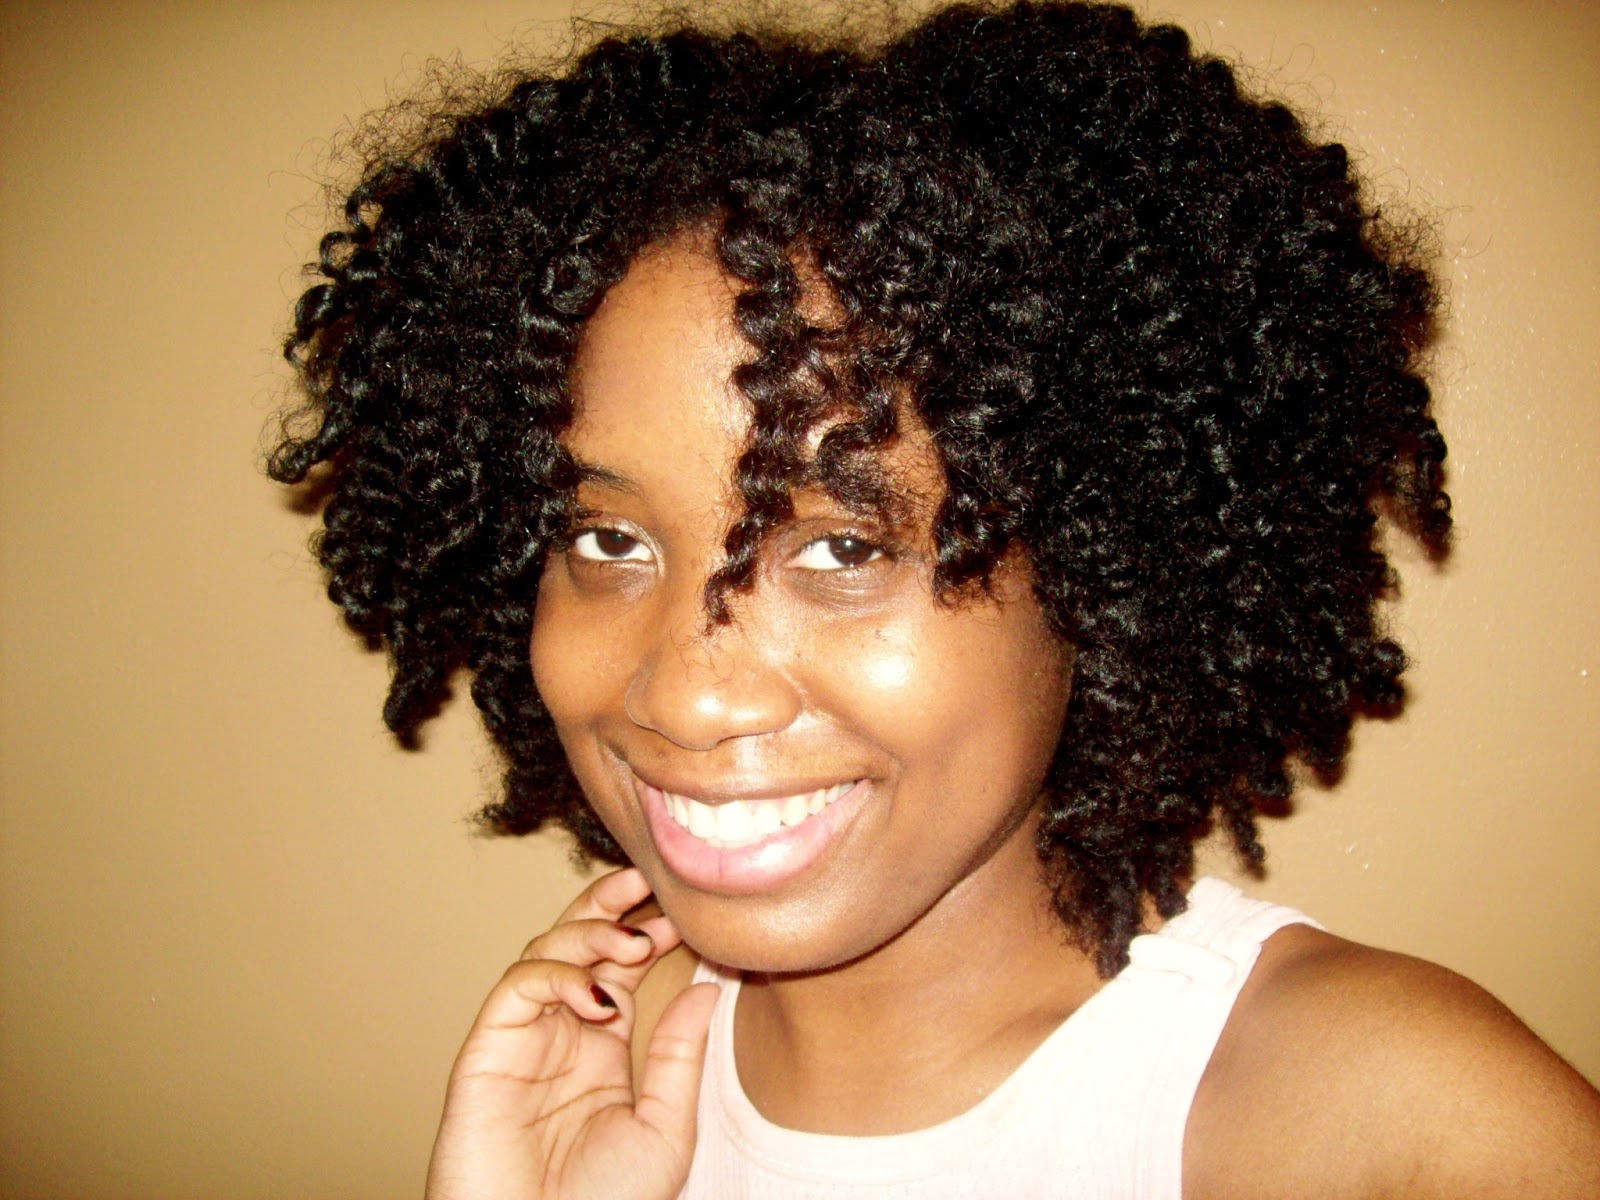 Wedding Hairstyles For Black Women 2014 Maar vind natuurlijke krullen veel mooier bij een donkere vrouw als zo 